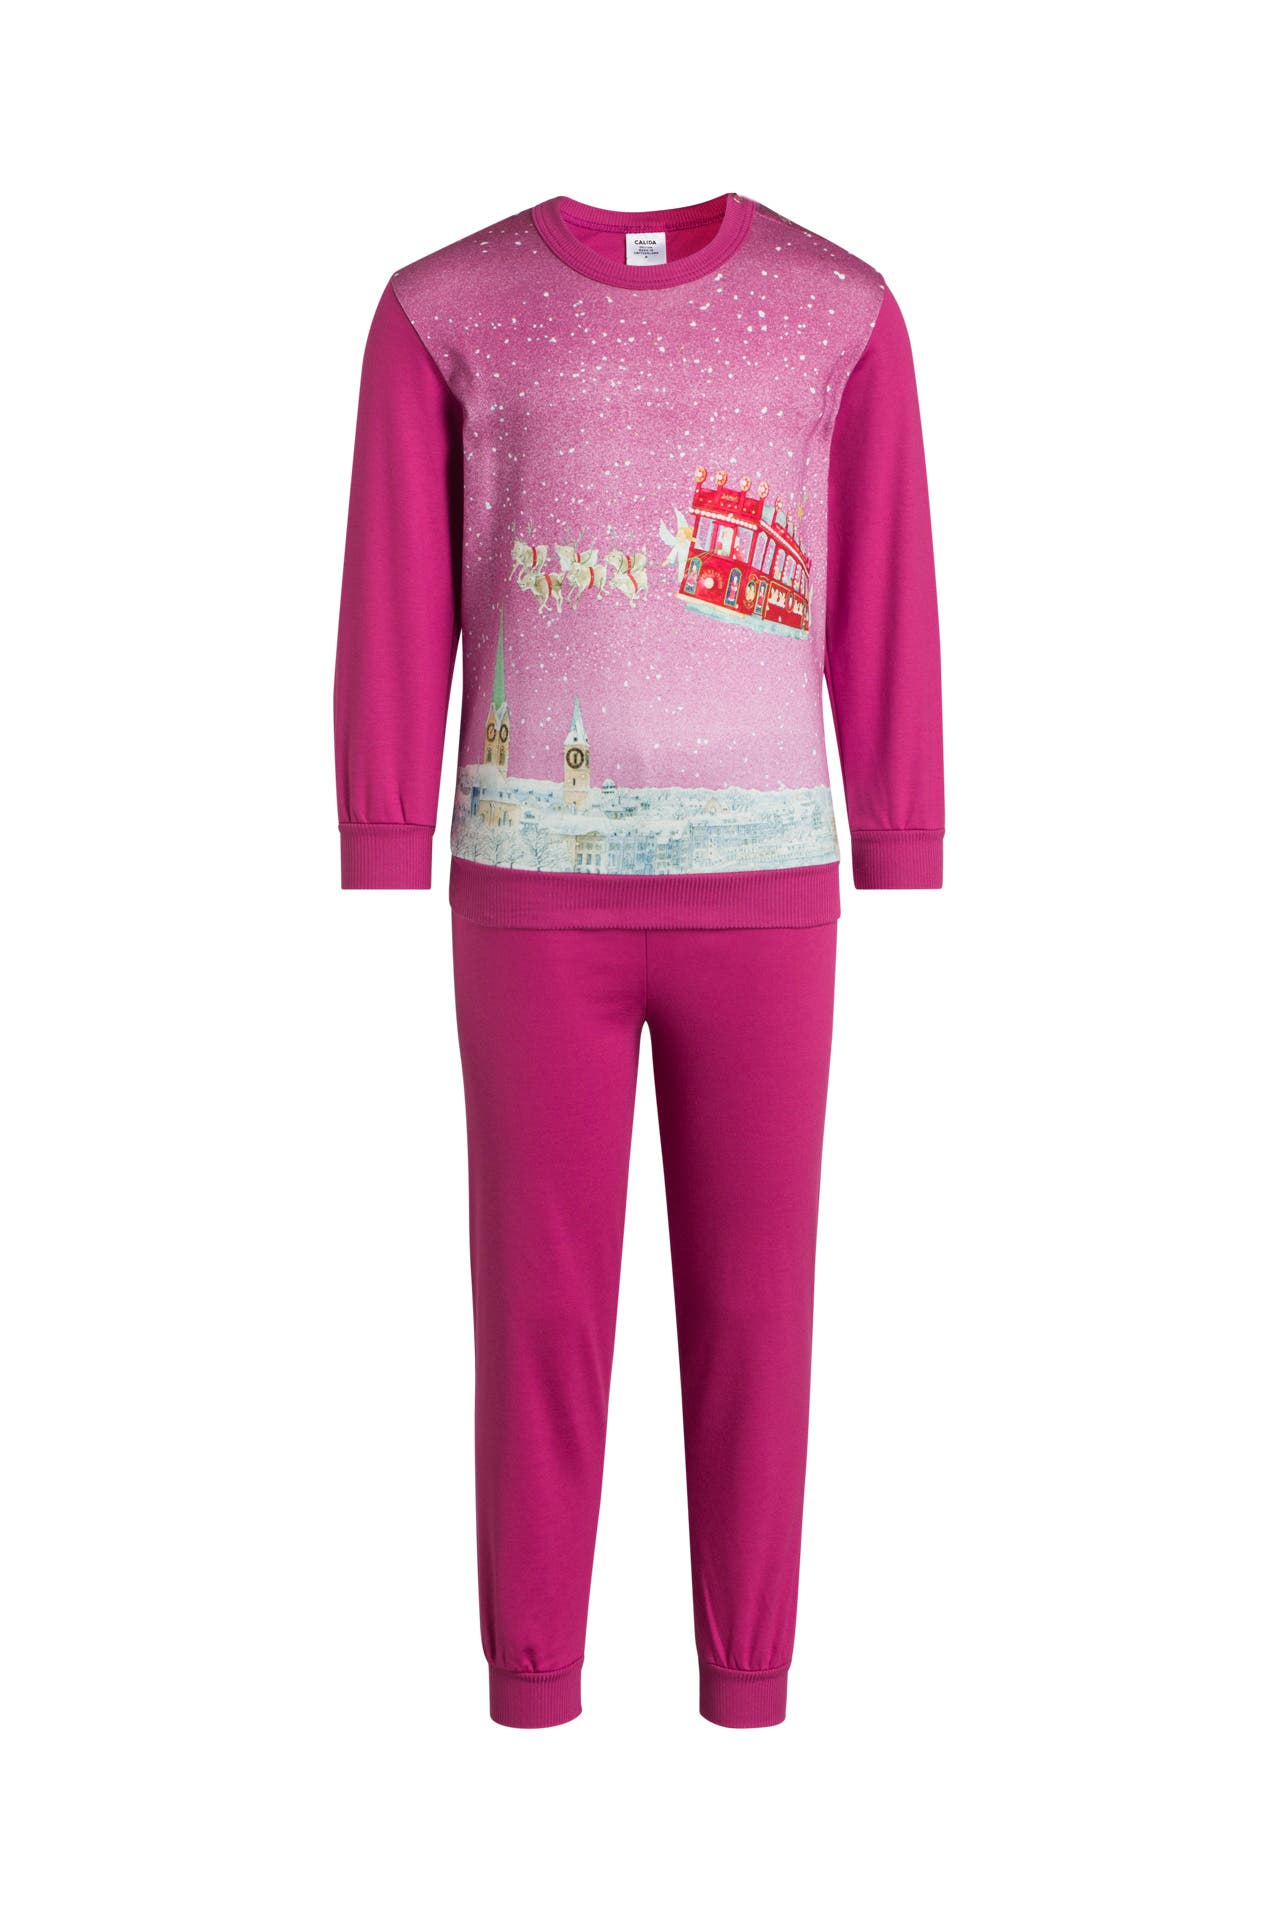 Me Afleiden Panter Pyjama 'Weihnachten' pink - CALIDA » günstig online kaufen | Outletcity